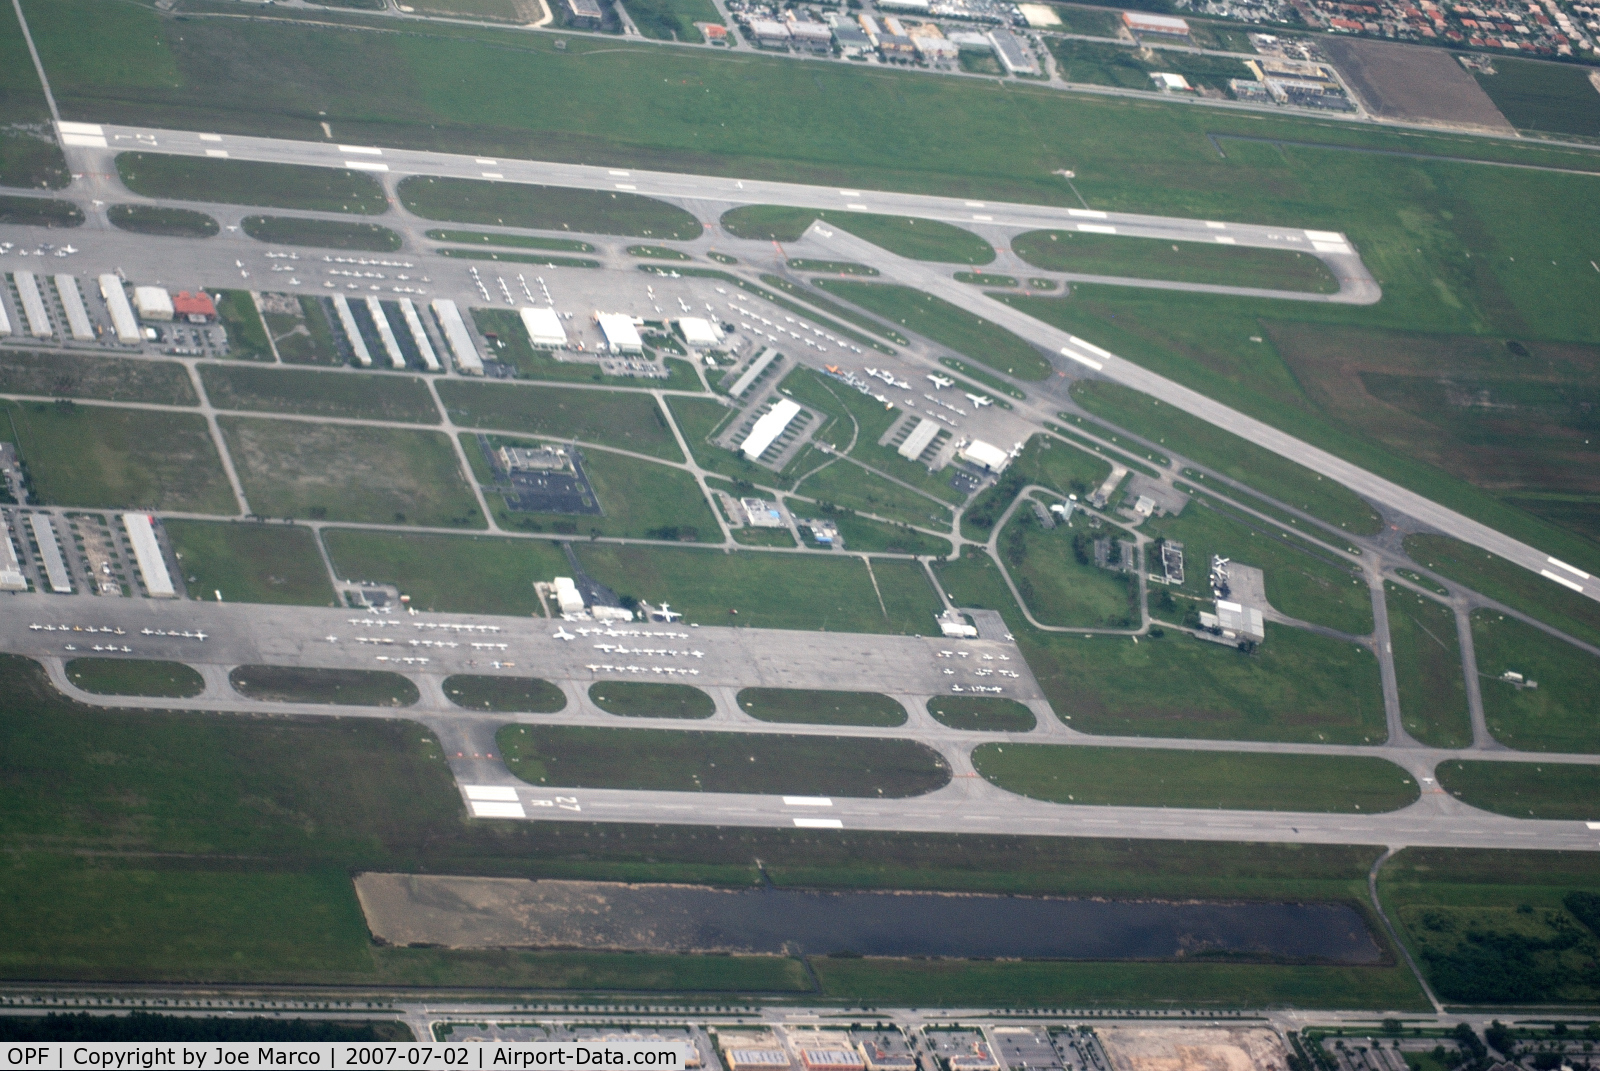 Opa-locka Executive Airport (OPF) - @OPF